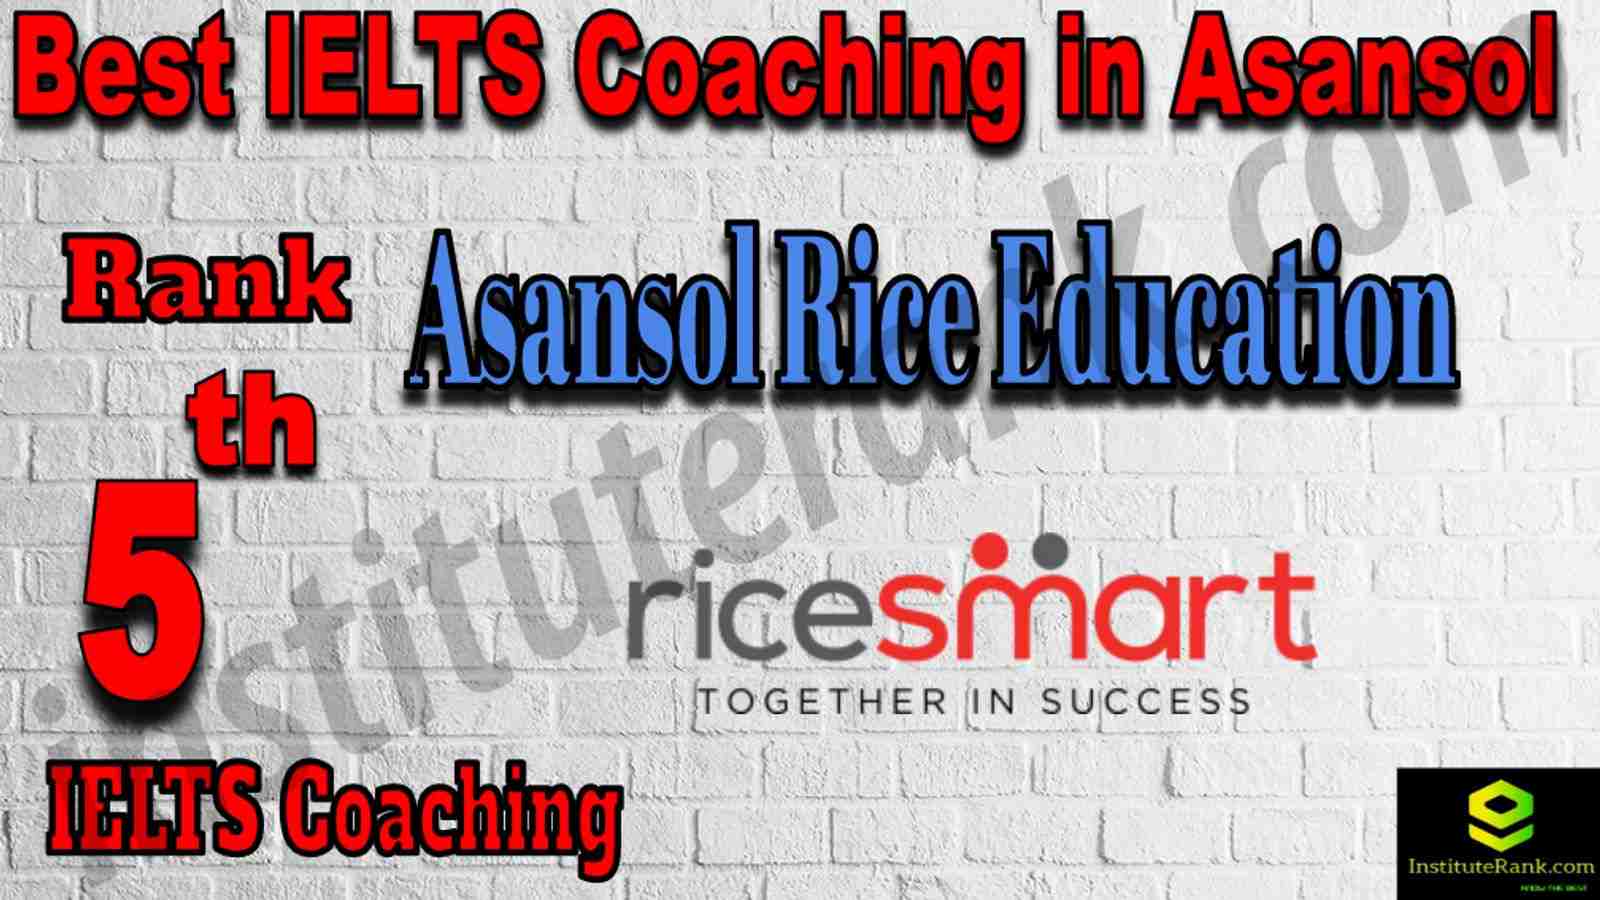 5th Best IELTS Coaching in Asansol